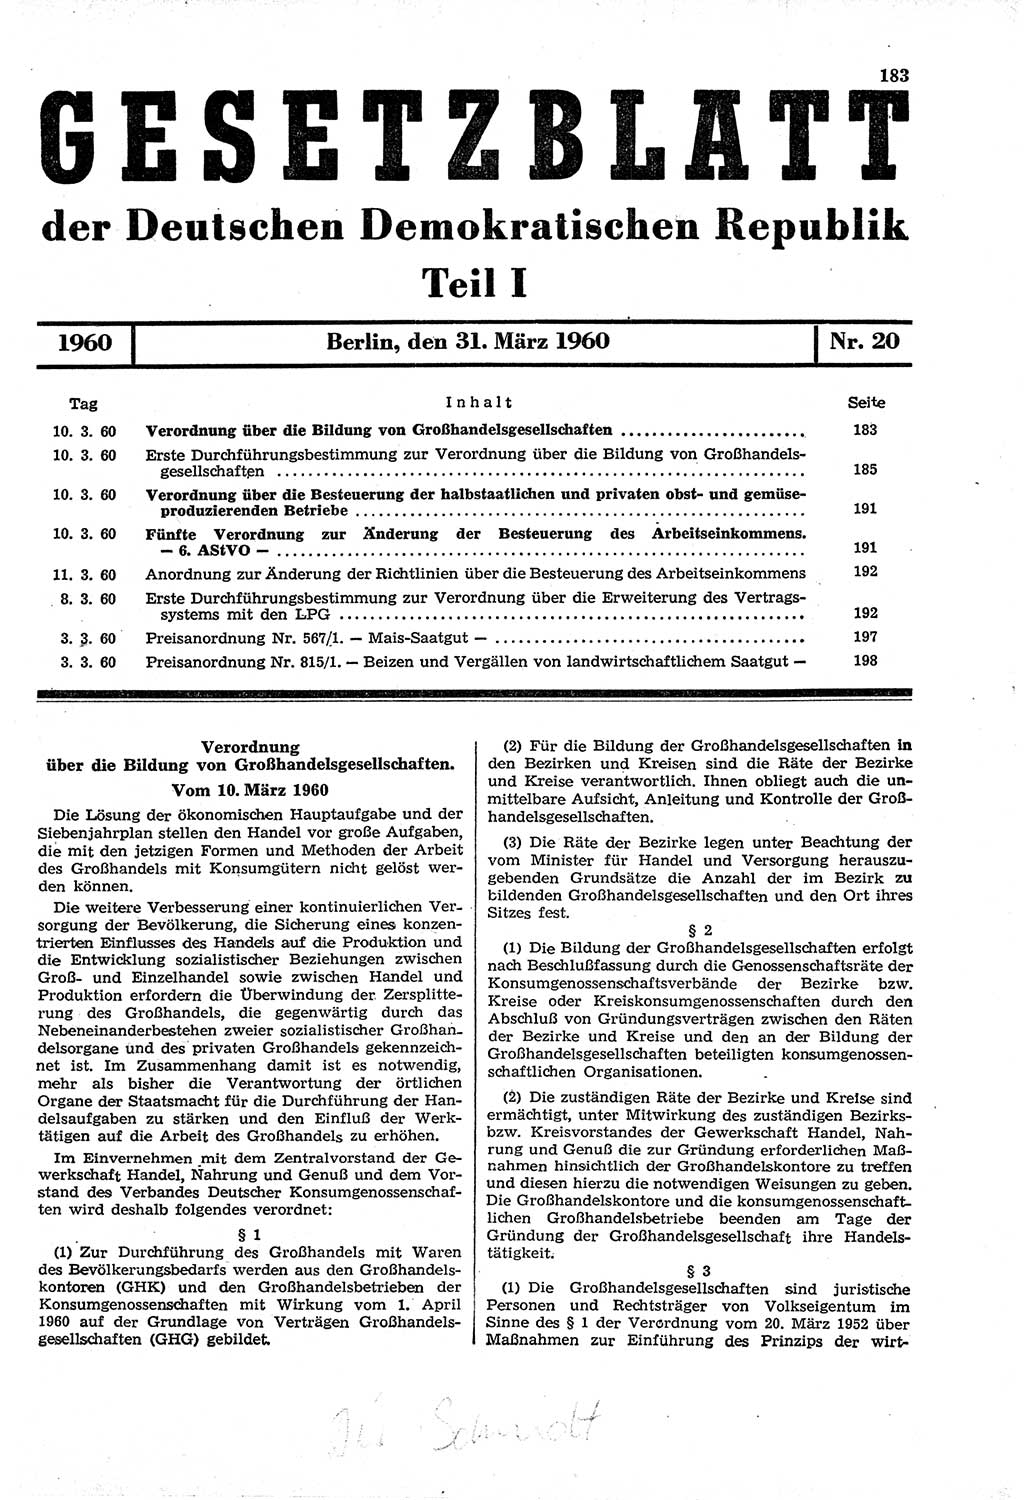 Gesetzblatt (GBl.) der Deutschen Demokratischen Republik (DDR) Teil Ⅰ 1960, Seite 183 (GBl. DDR Ⅰ 1960, S. 183)